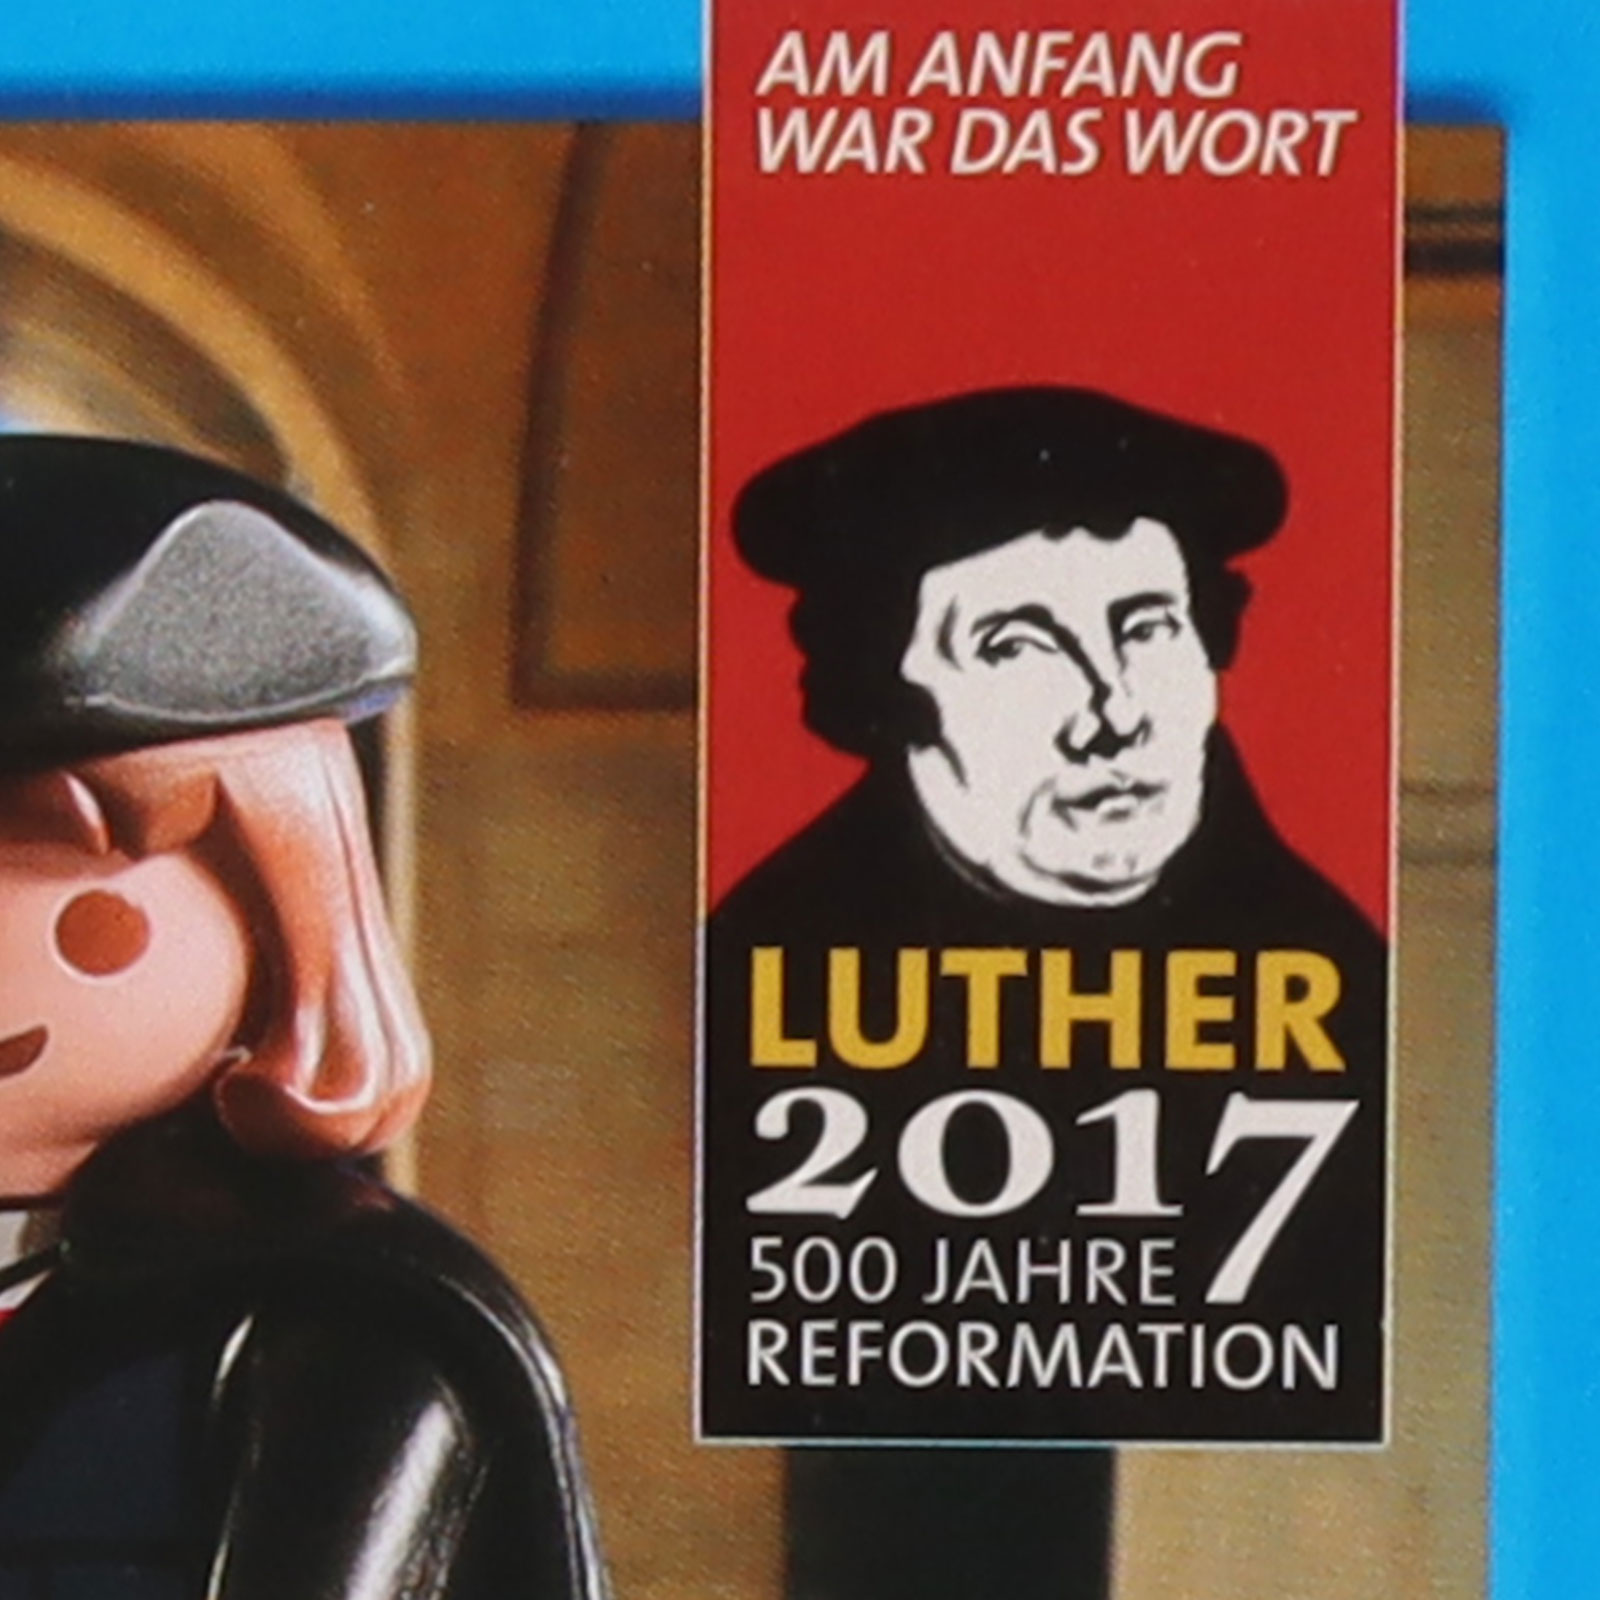 Detaillierte Ansicht  der Erinnerung an die 500 Jahre zurückliegende Reformation von Martin Luther